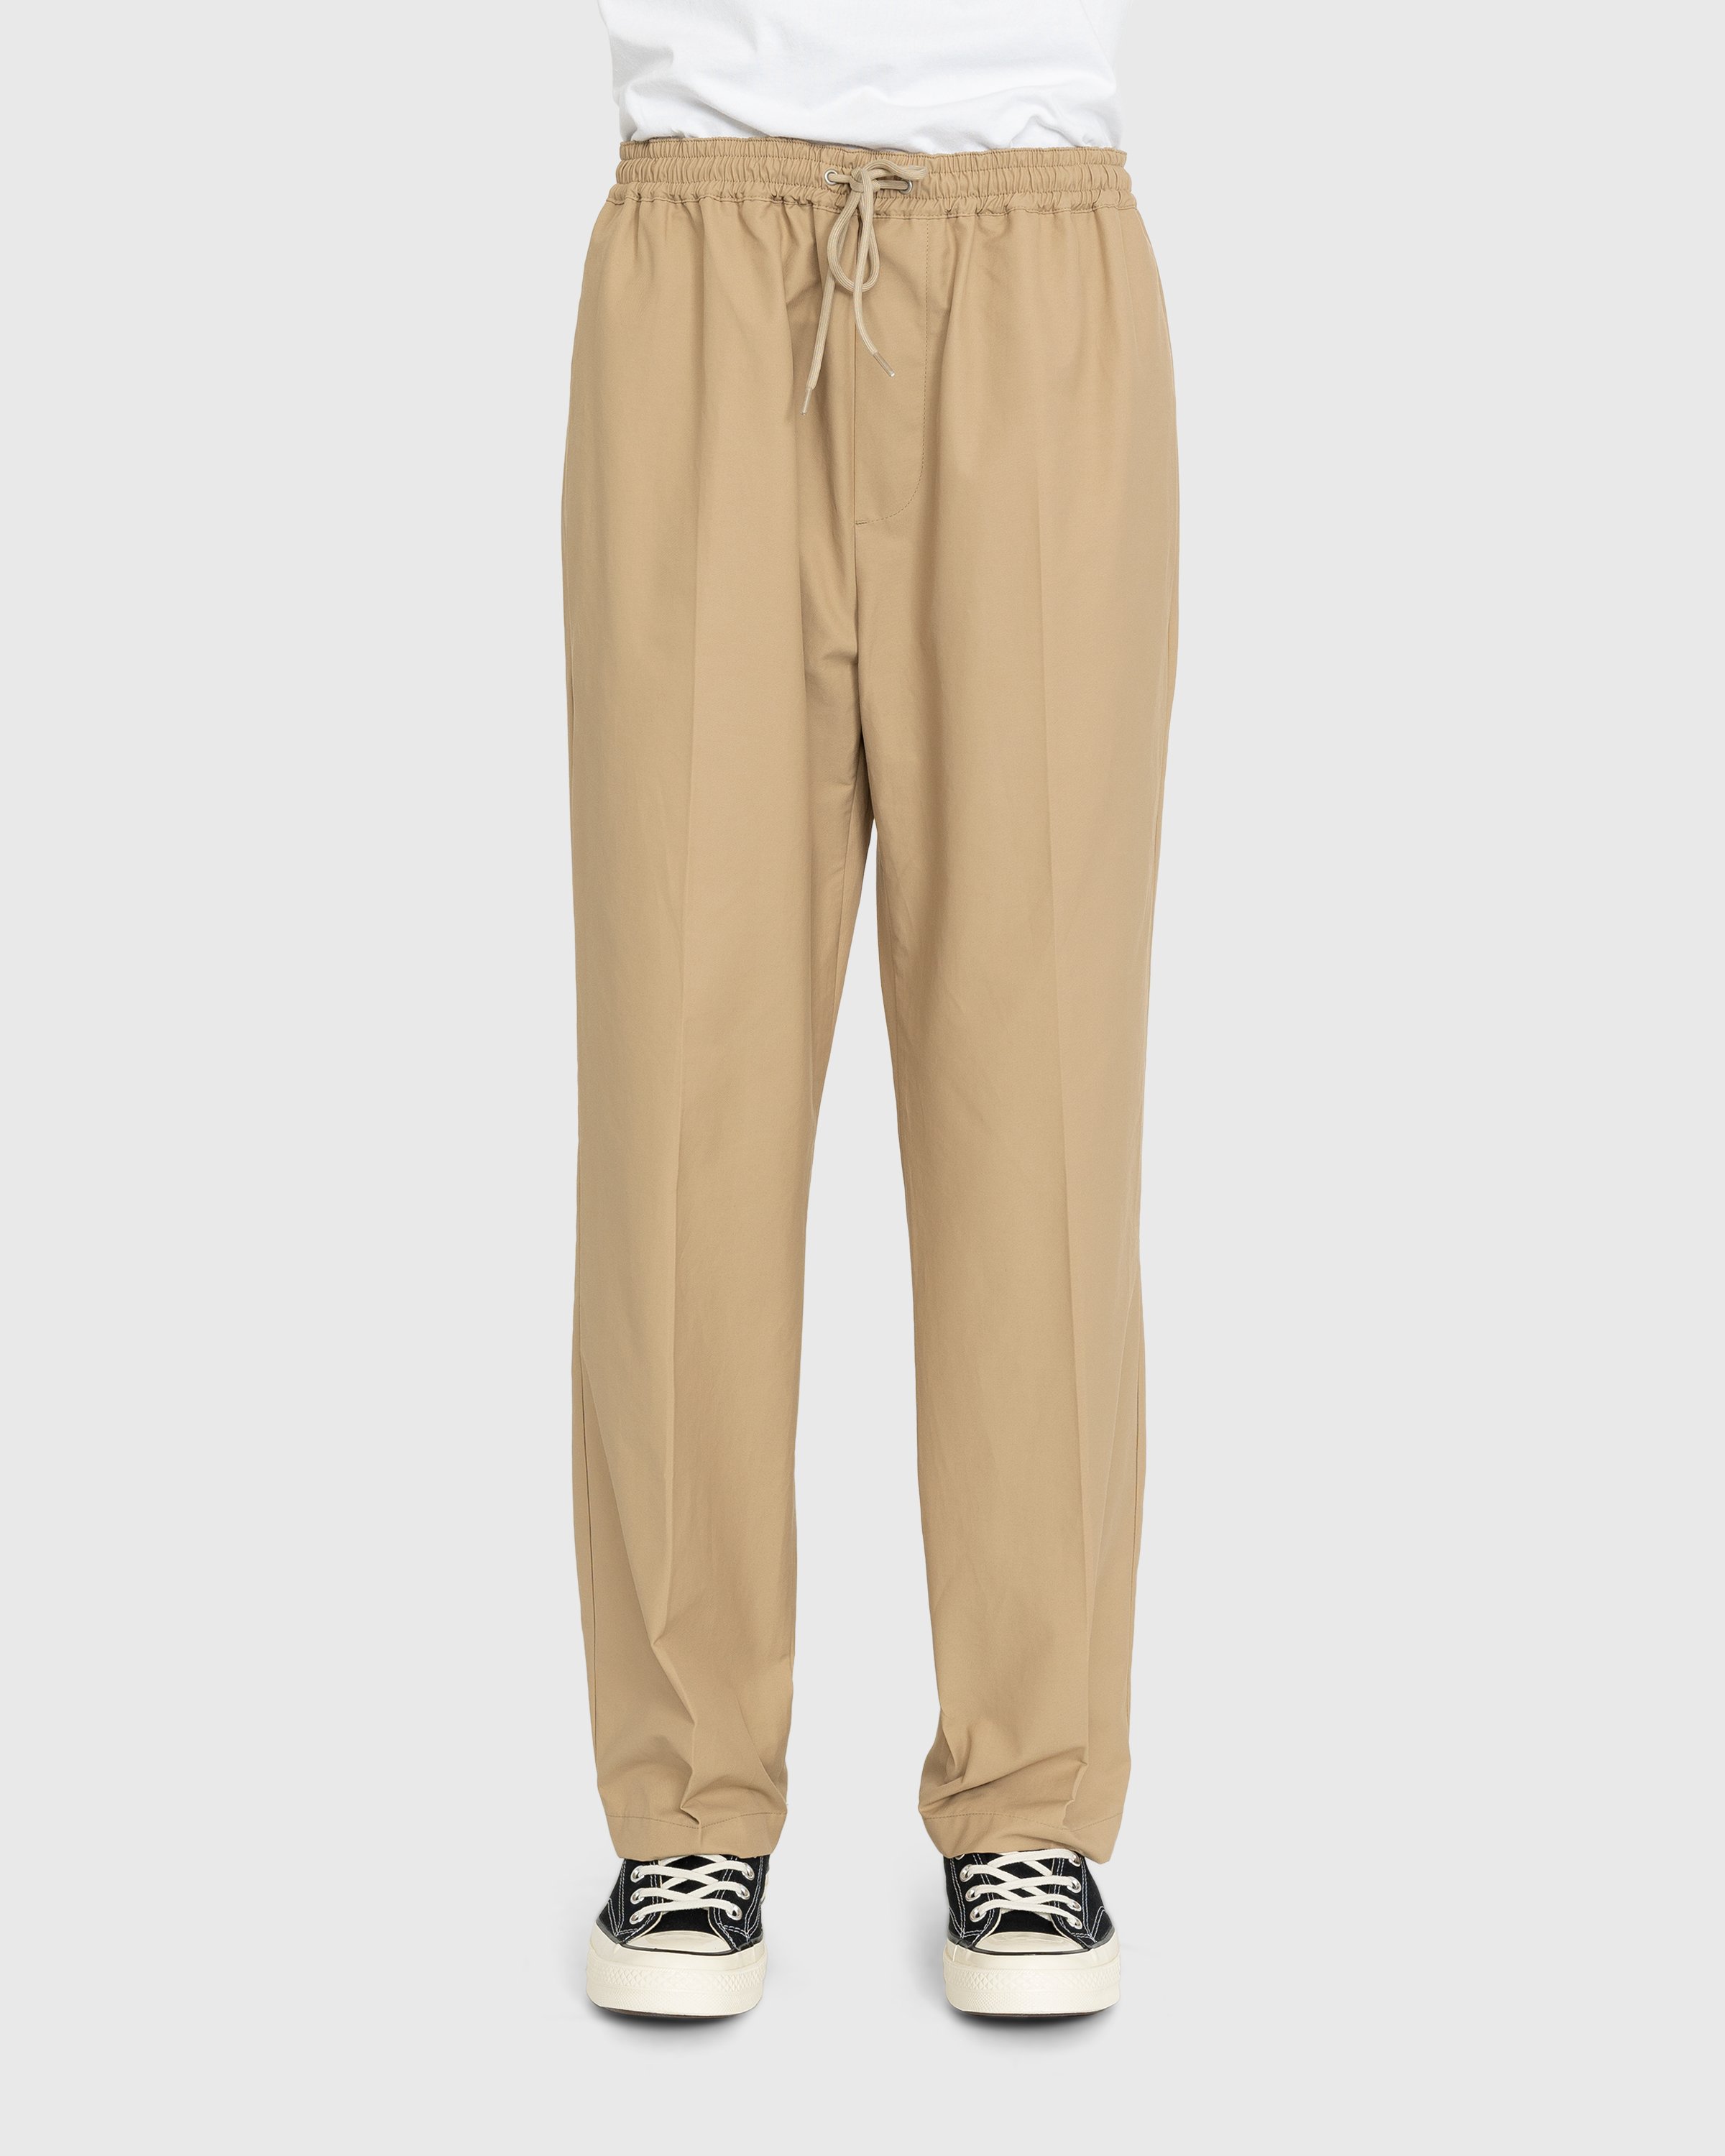 Highsnobiety - Cotton Nylon Elastic Pants Beige - Clothing - Beige - Image 2